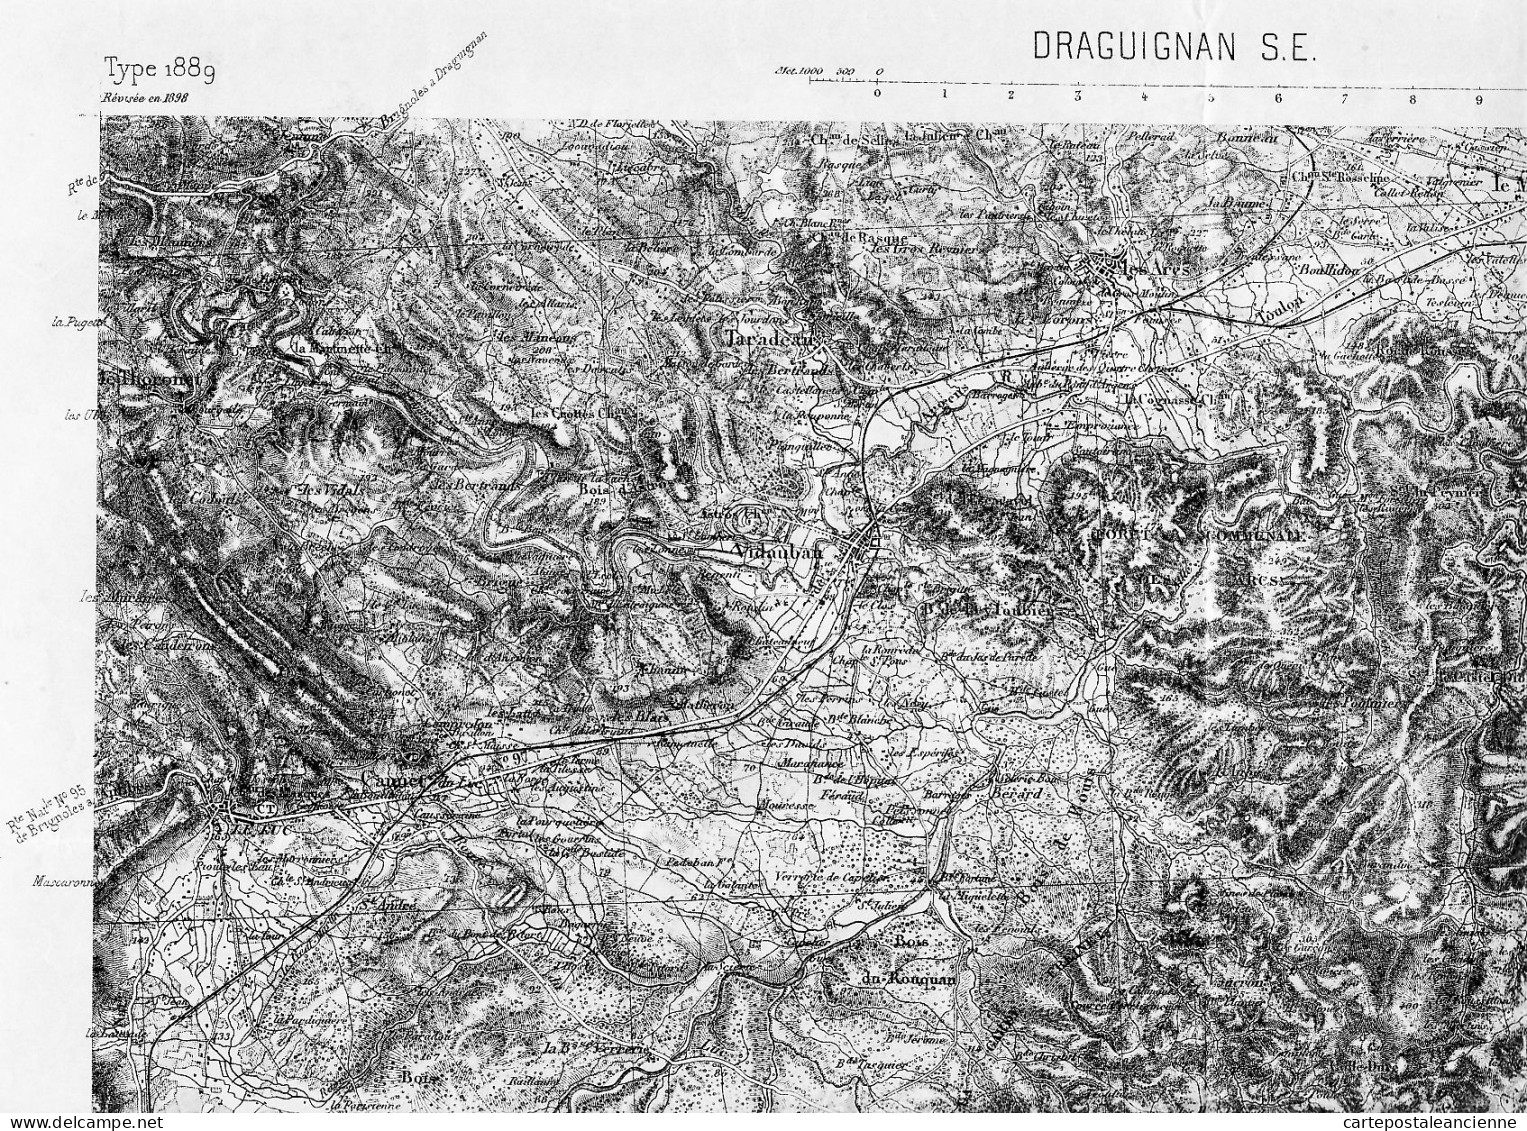 00648 ● DRAGUIGNAN (83) ROQUEBRUNE Ste MAXIME GONFARON Sud Est Type 1889 Révisé 1898 N° 236 Gravé PIERRON HACQ LEPAGE - Mapas Topográficas